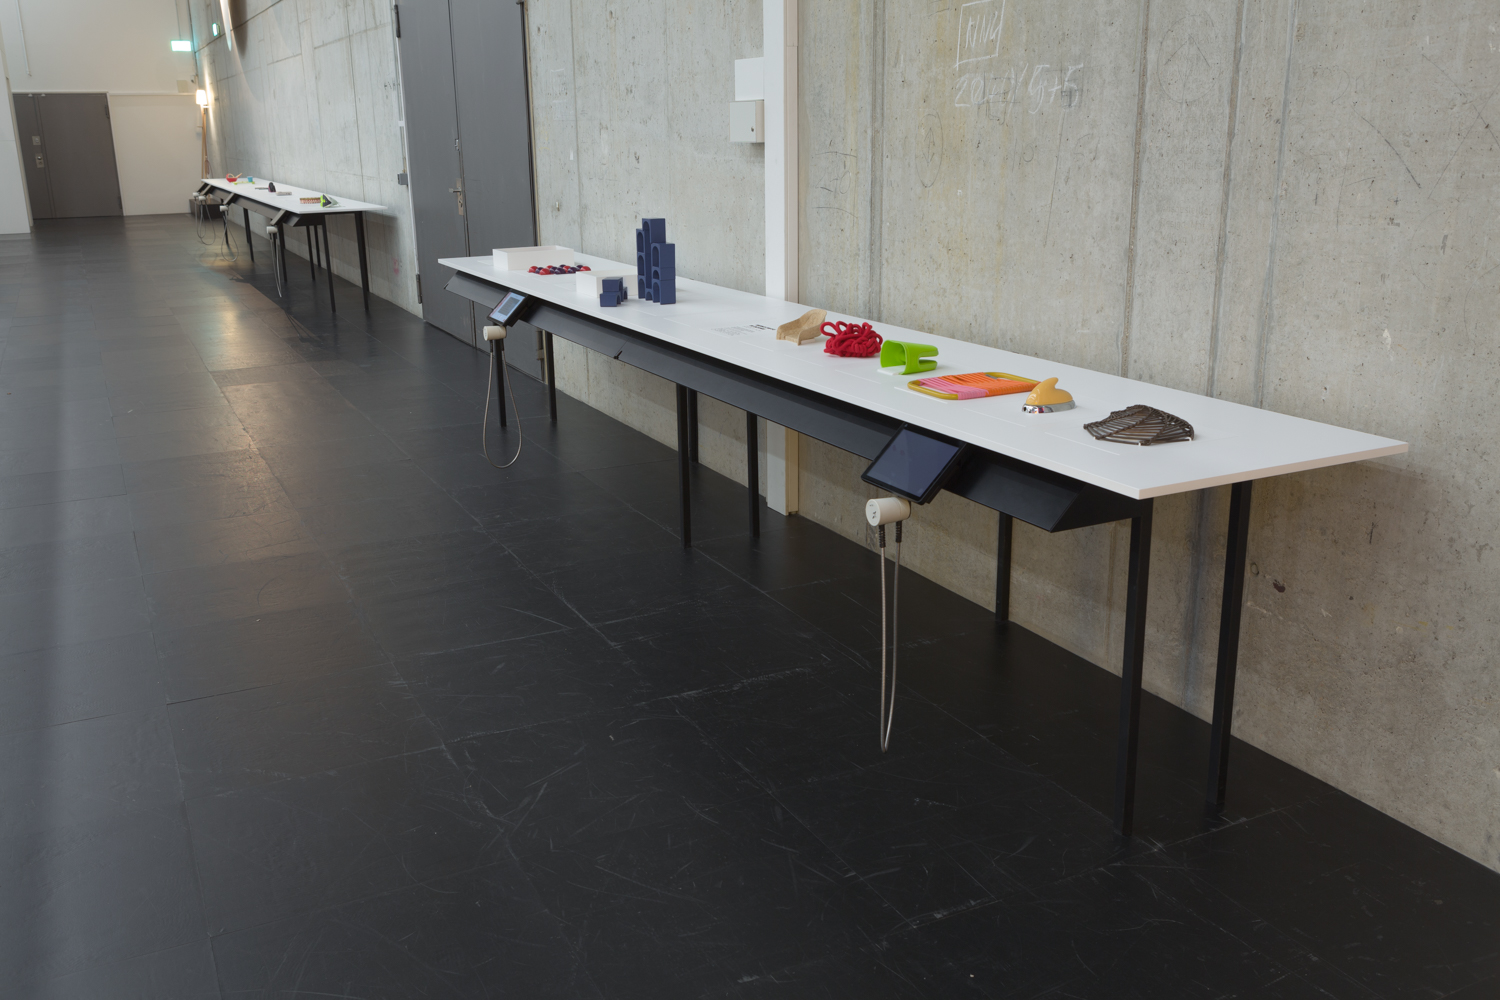 Zu sehen ist die Taststation im Ausstellungsraum: Ein Tisch steht vor einer grauen Betonwand. Er hat ein dünnes, schwarzes Tischgestell und eine weiße Tischplatte. Darauf befinden sich mehrere bunte Tastobjekte.